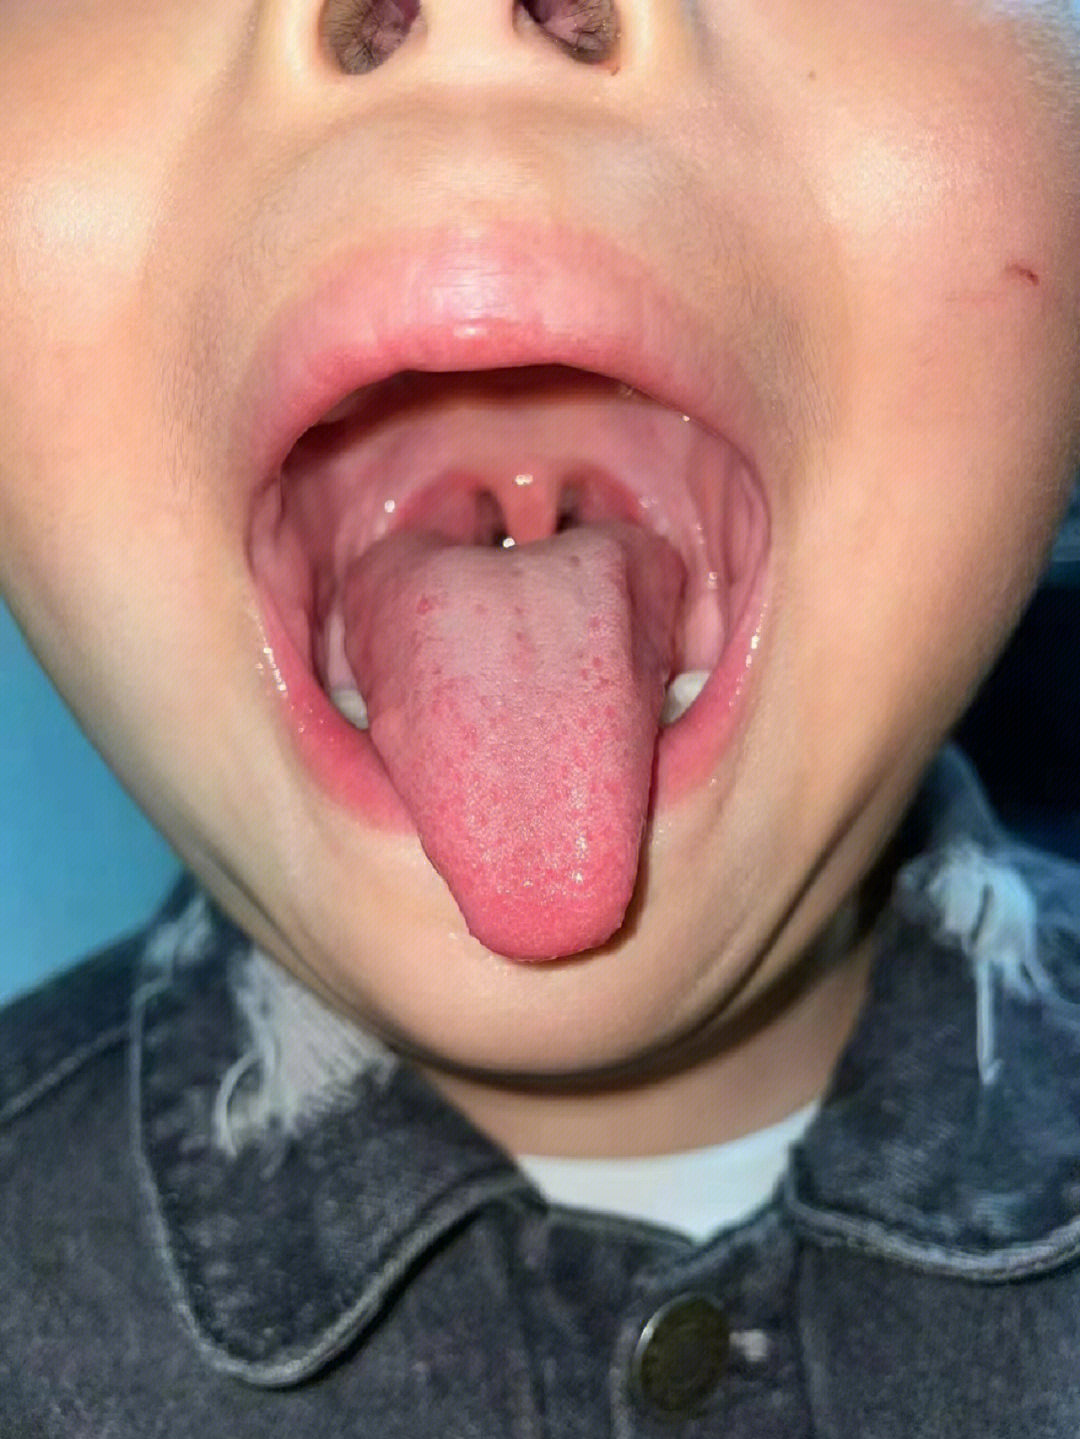 舌头下面有血丝图片图片